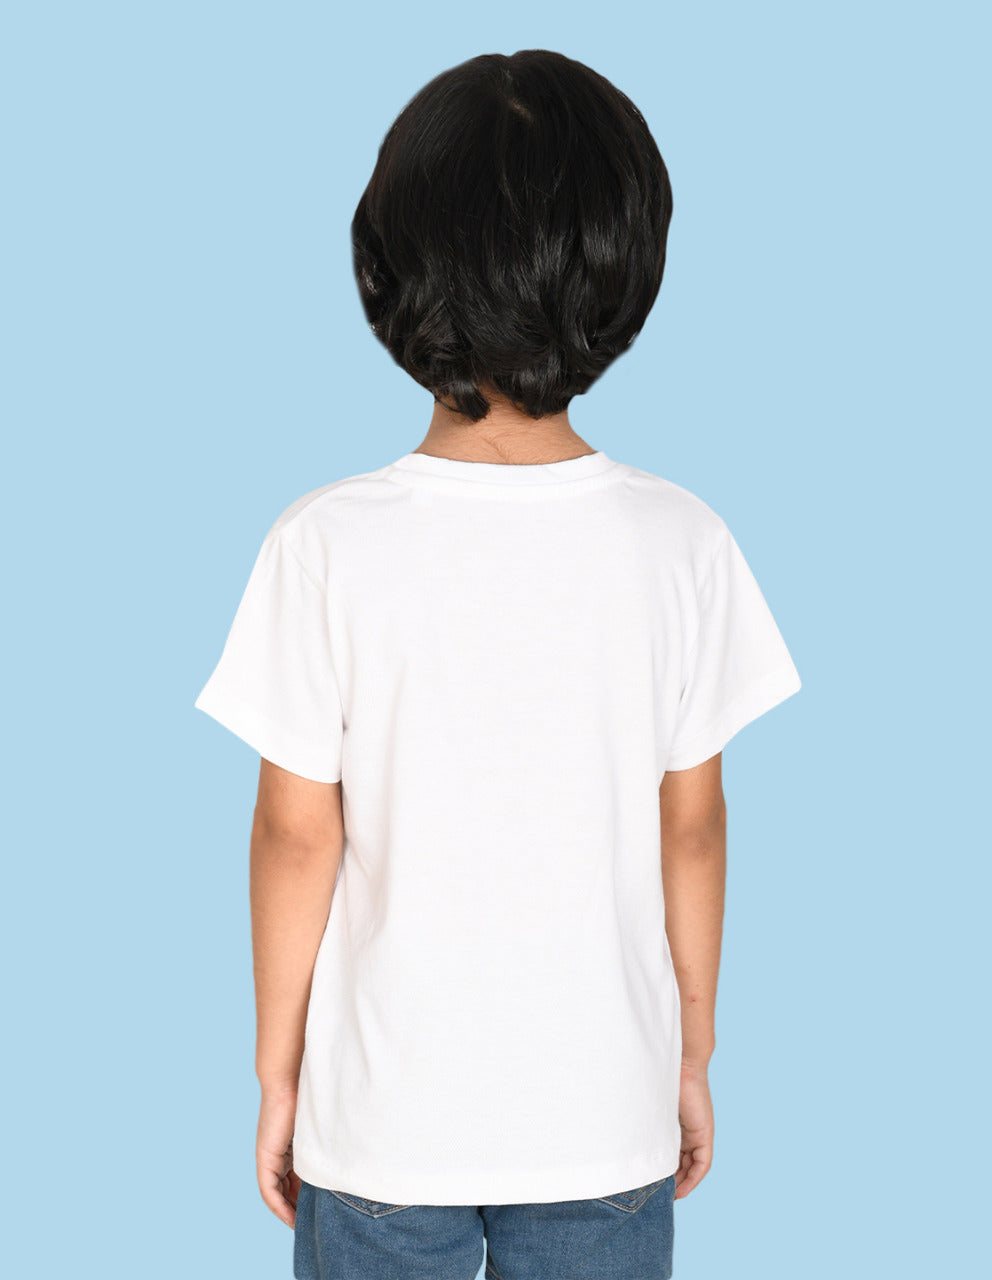 Nusyl Smile Printed White Biowashed Cotton Half  T-shirt T-shirt